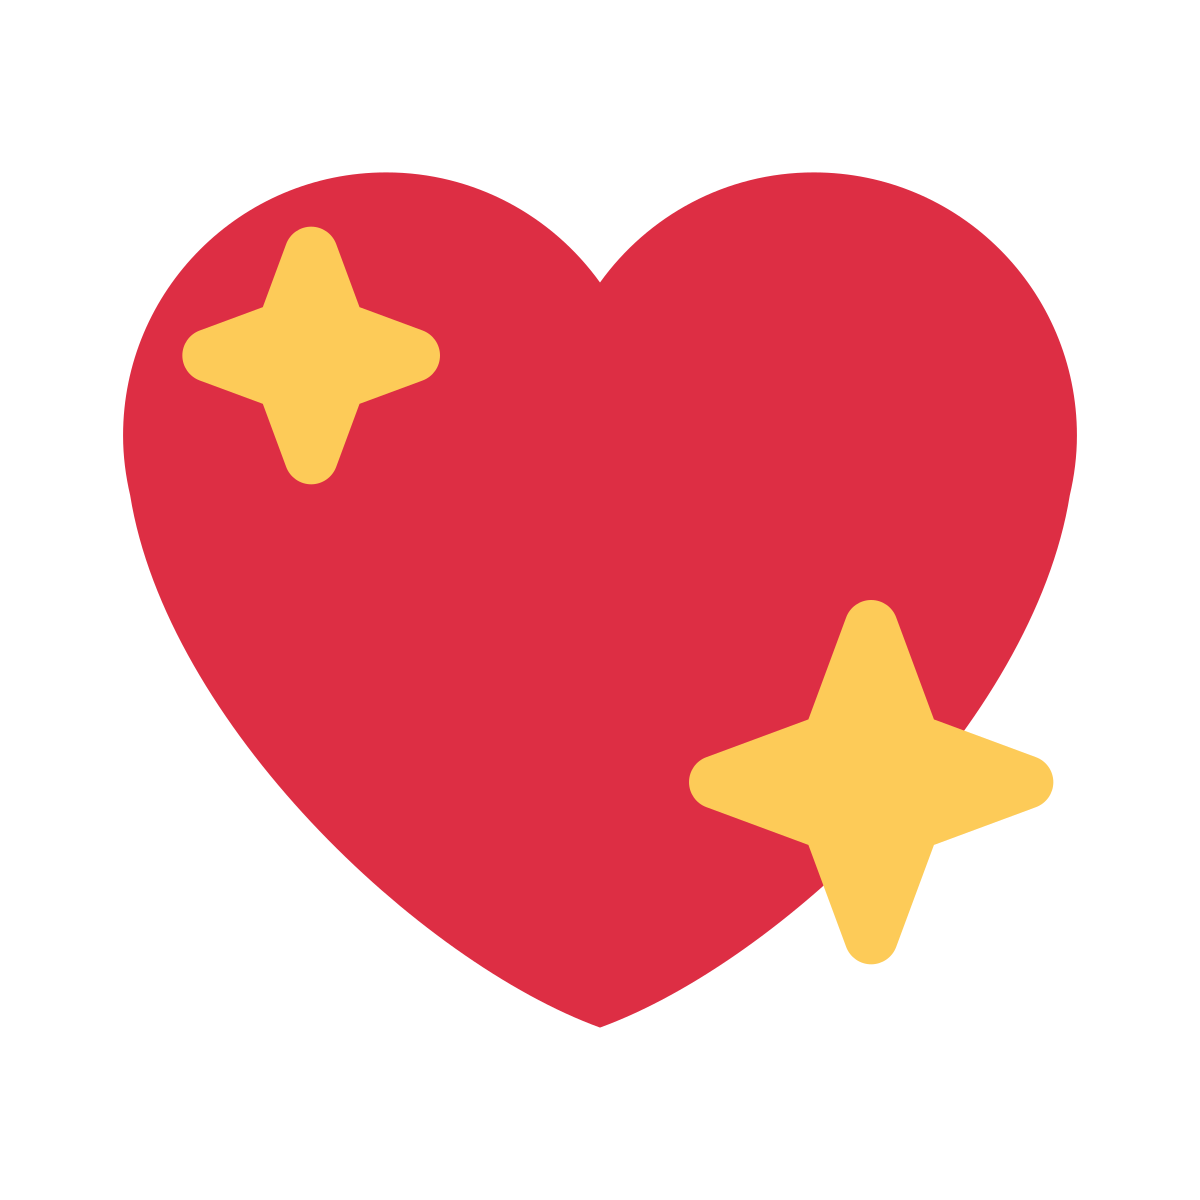 Sparkling Heart Emoji Emojis De Iphone Imagenes De Emoji Emojis Images